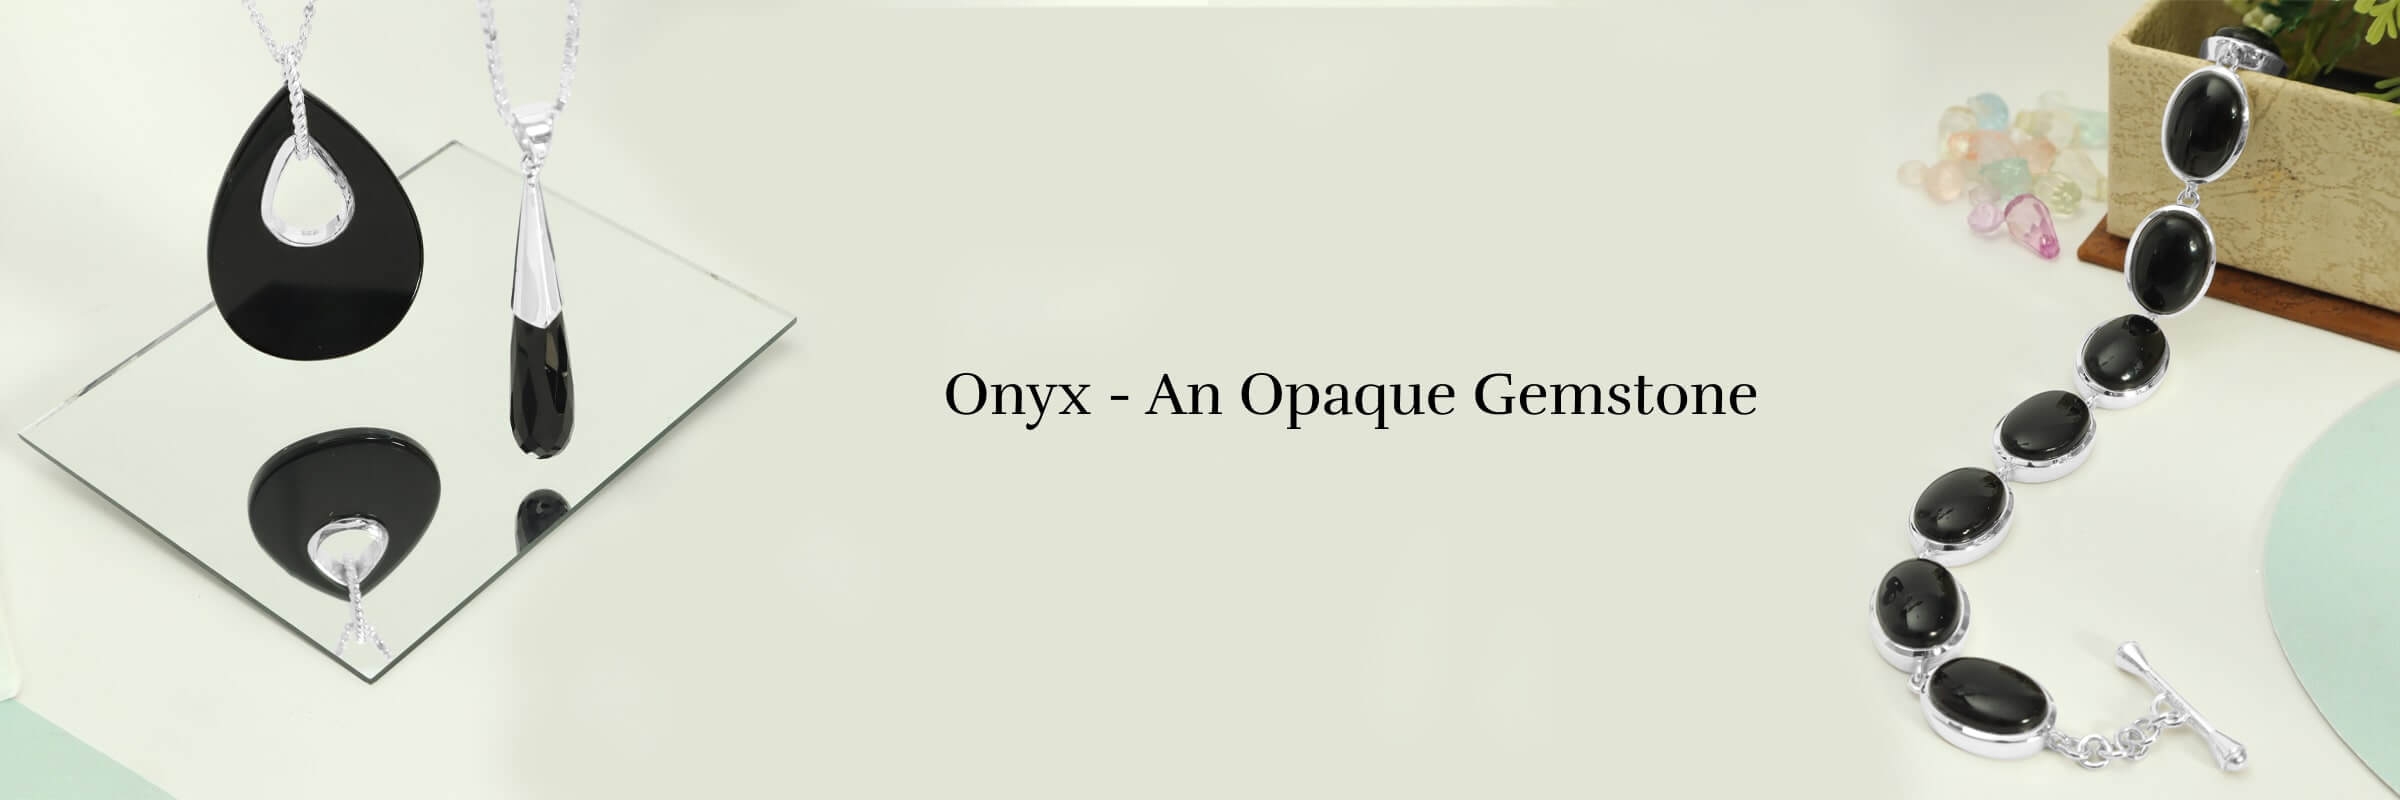 Advantages of onyx